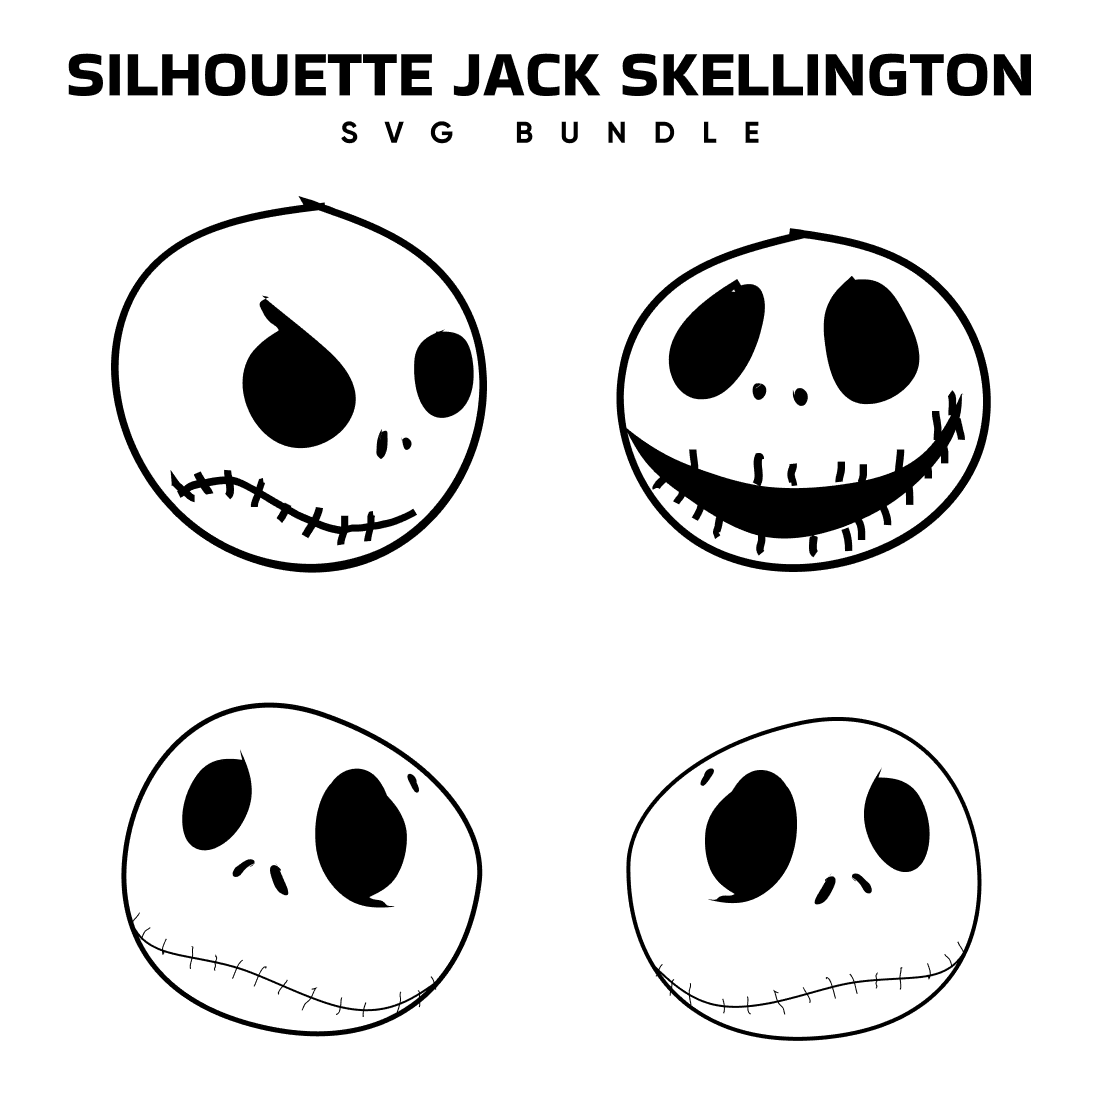 Silhouette Jack Skellington Svg Free.